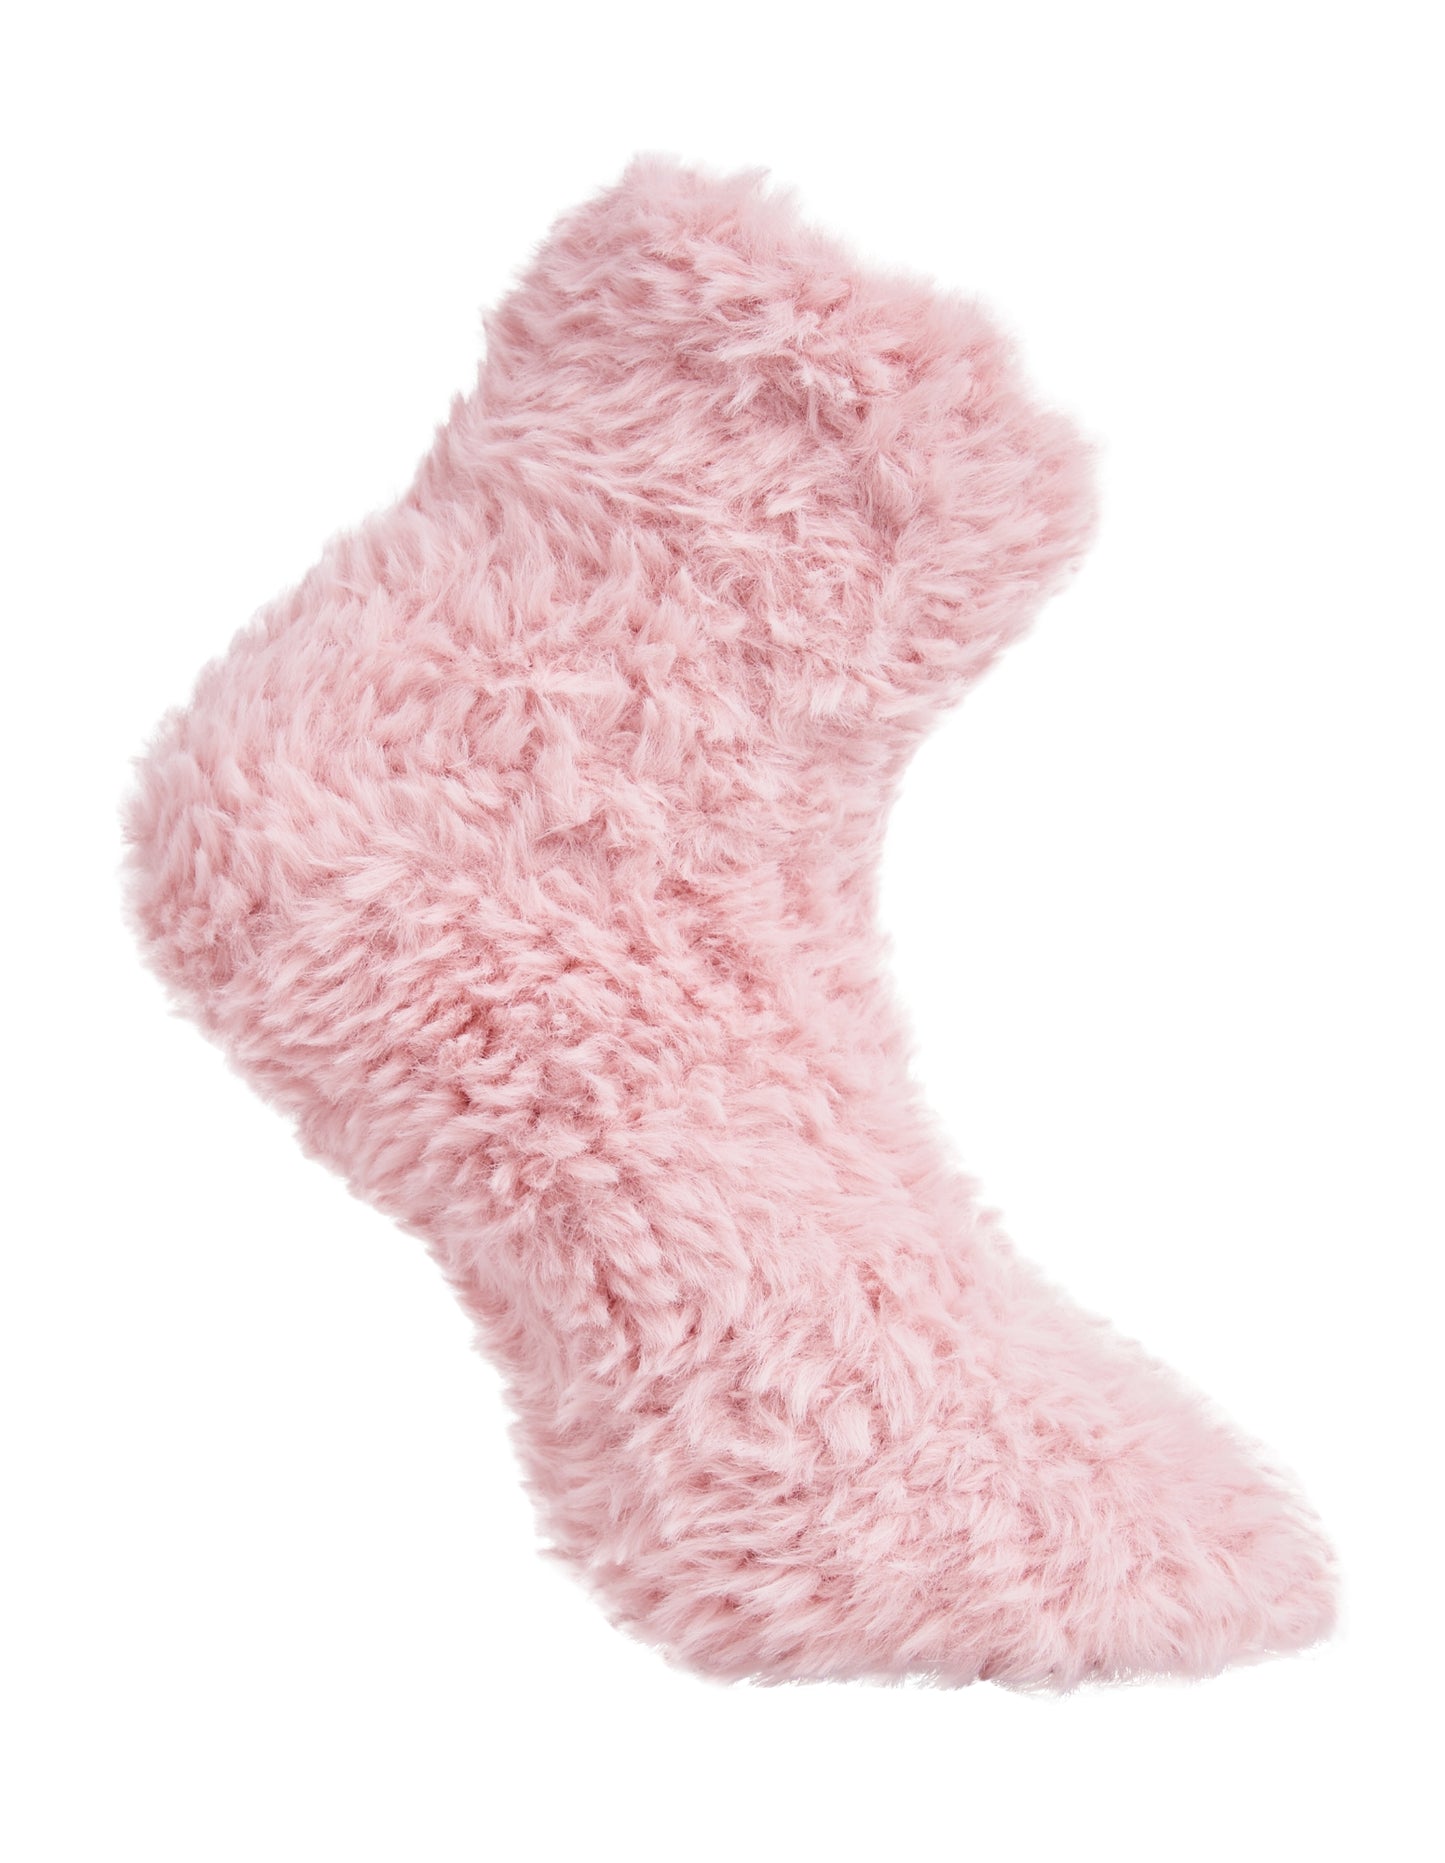 Side of Simon de Winter Women's Cosy Home Socks in Soft Pink